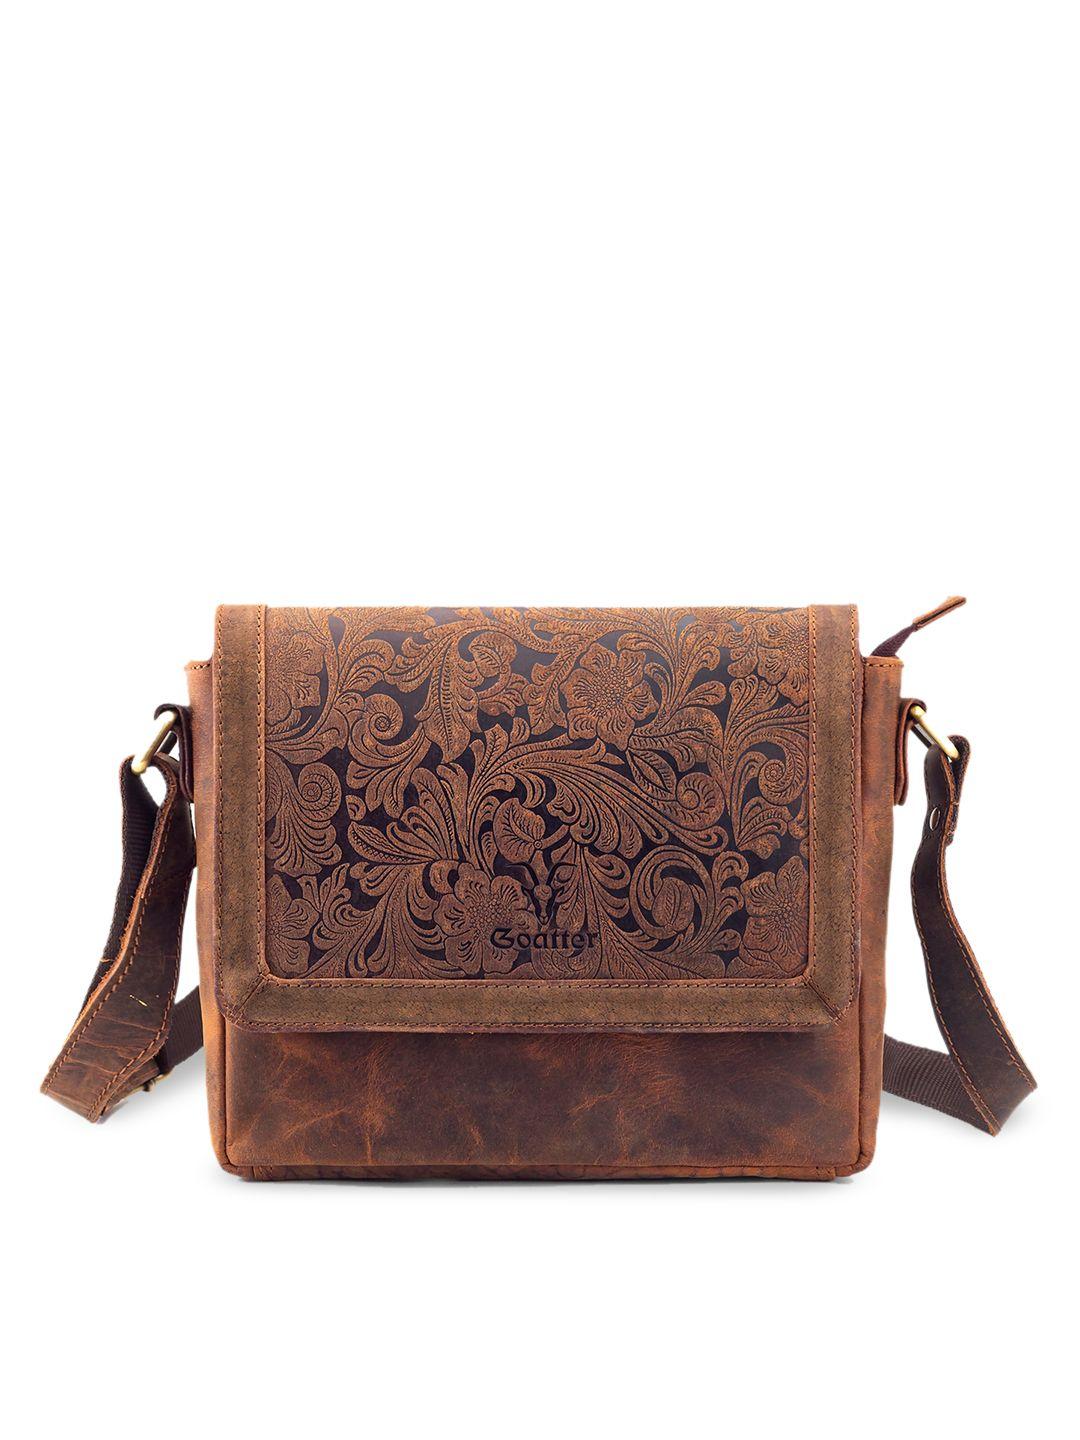 goatter leather structured sling bag